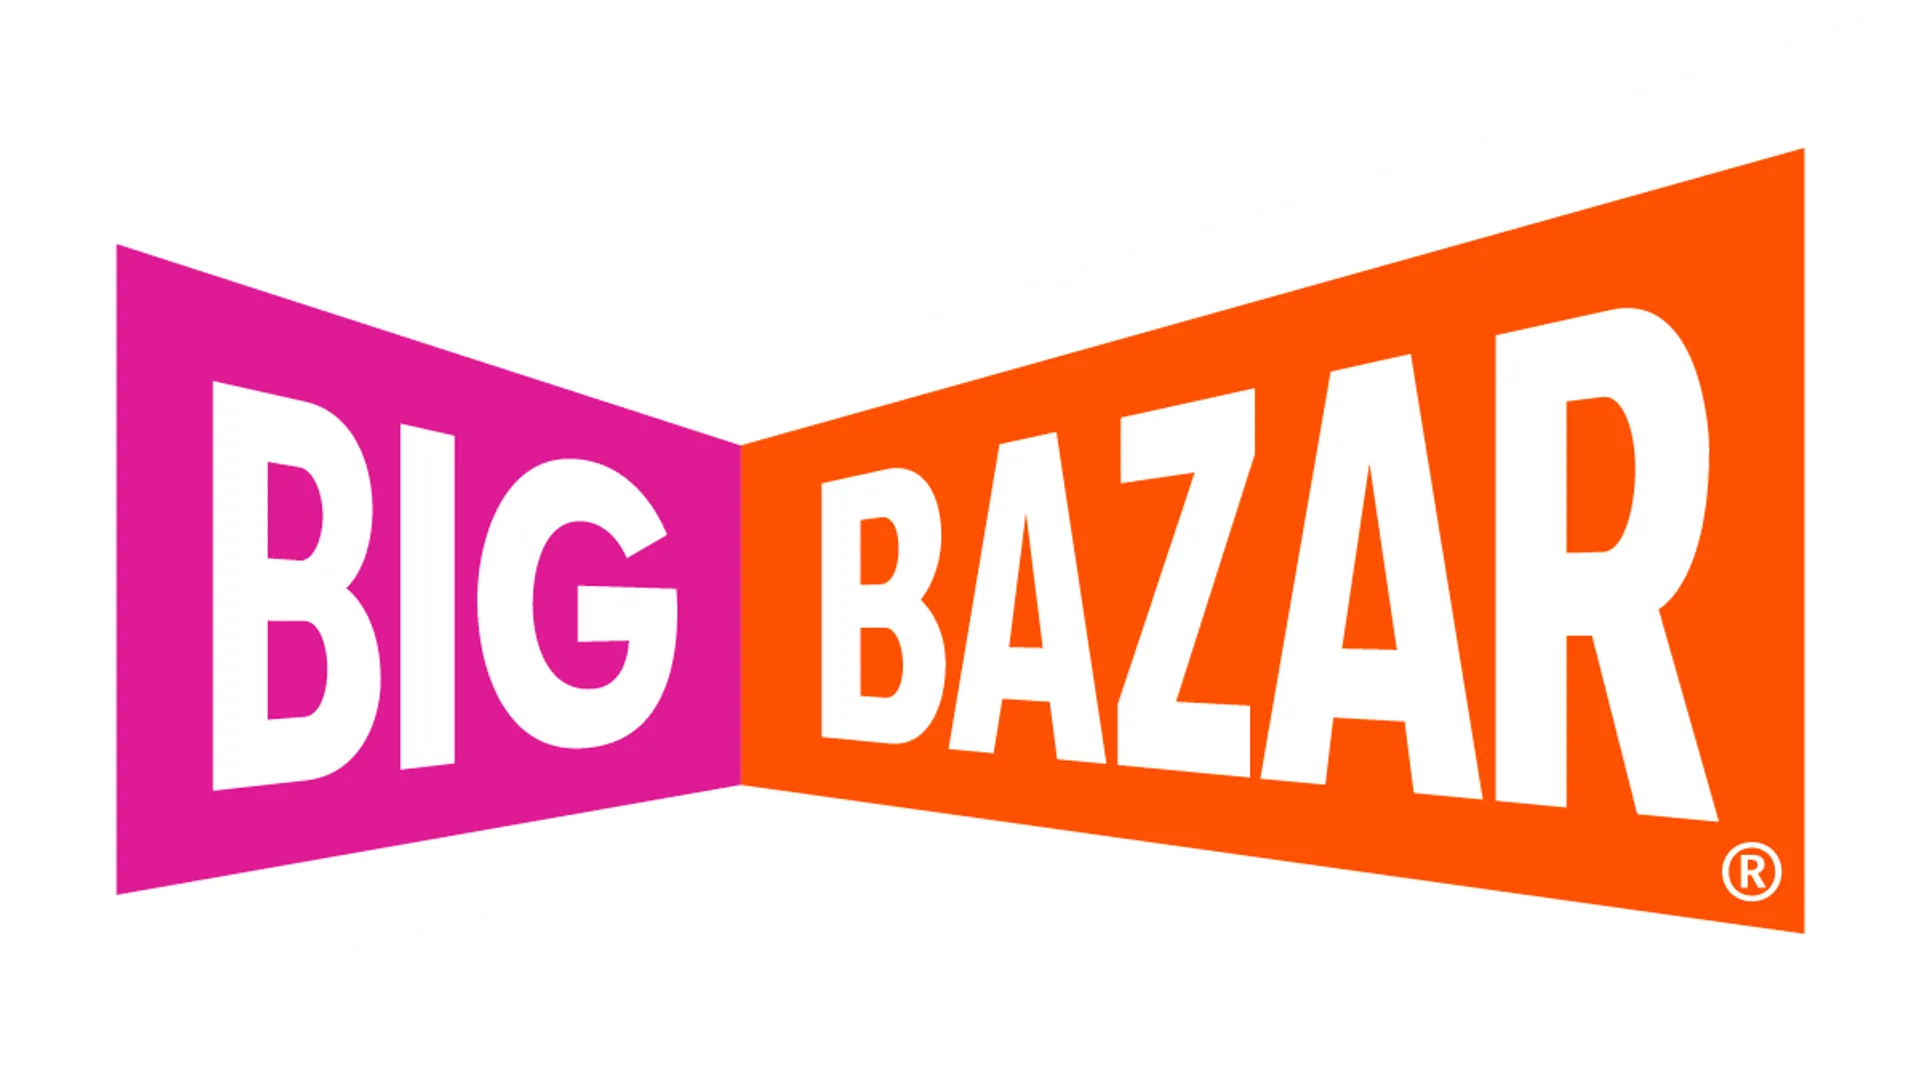 BIG BAZAR logo